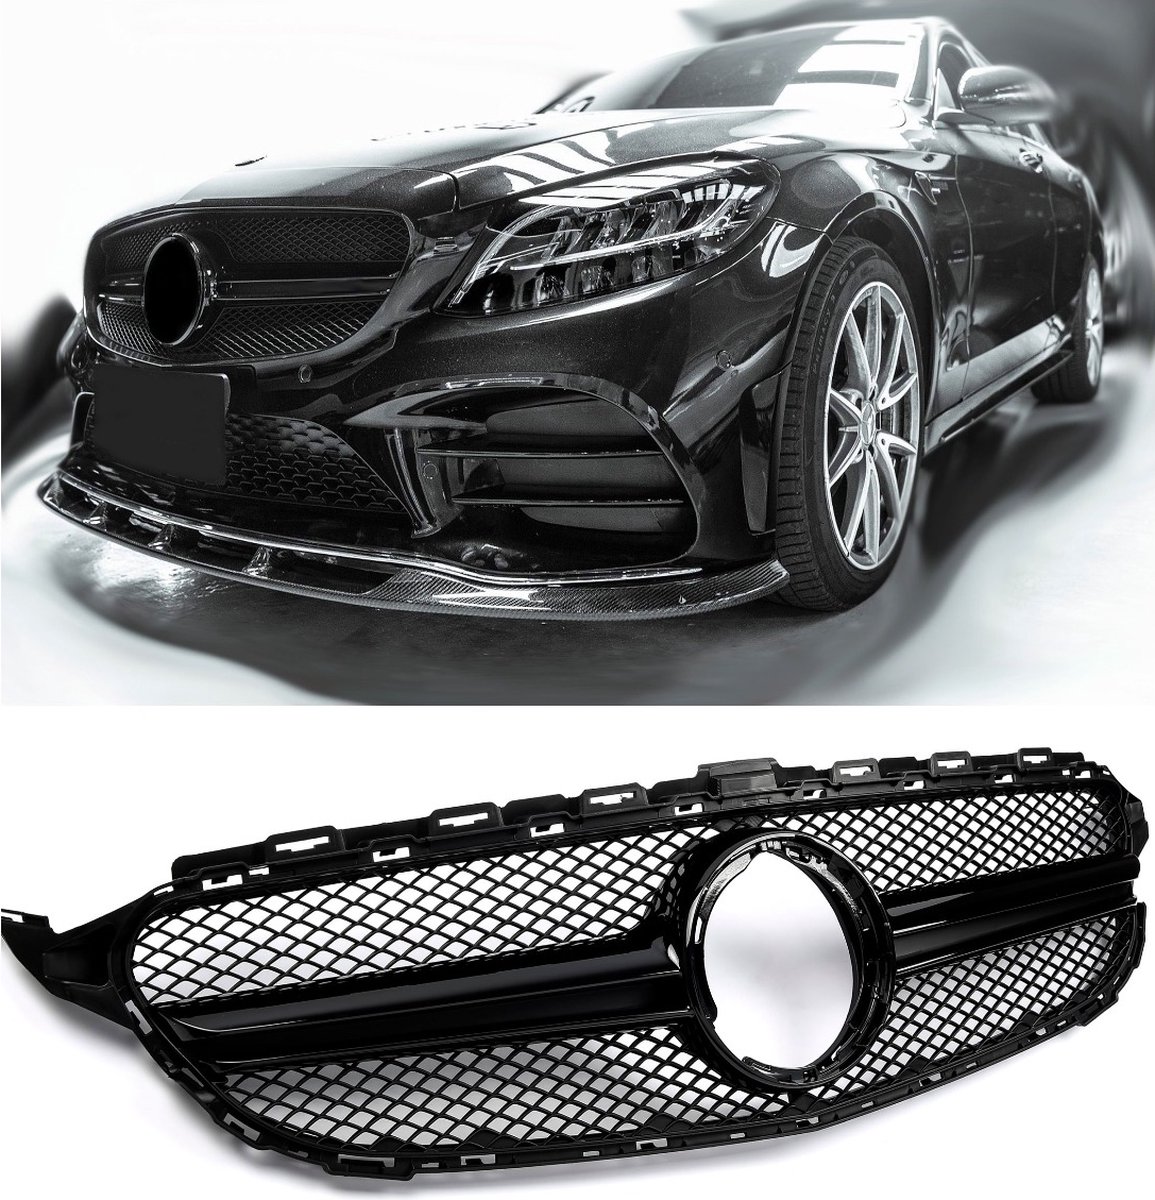 Grill Sport grille past voor Mercedes W205 FACELIFT zwart / zwart